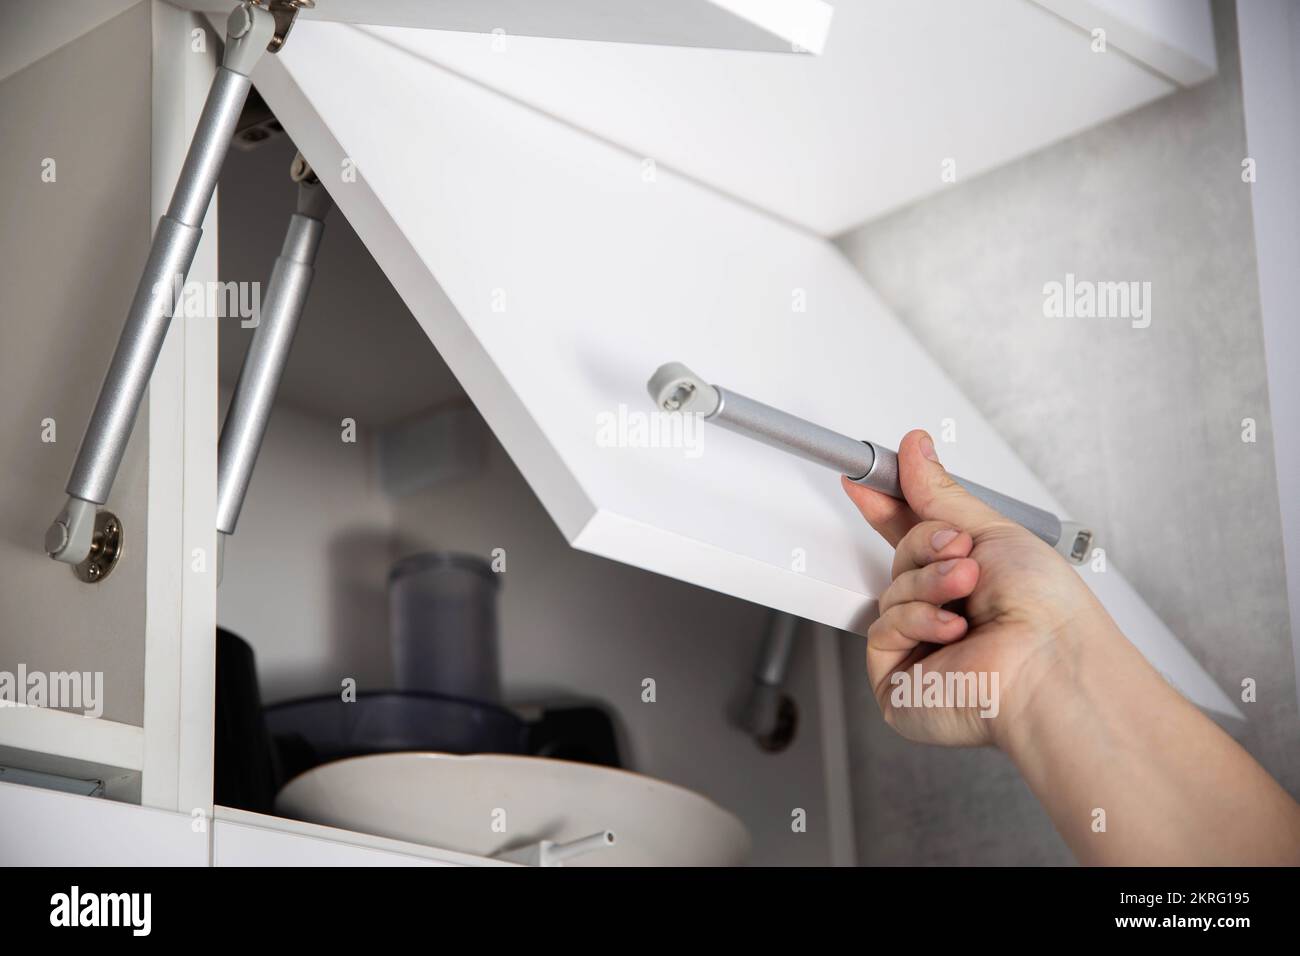 Ein Möbelmontagearbeiter hält eine einhole Gasfeder, um eine Schranktür zu  öffnen und zu stützen. Moderne Möbel Stockfotografie - Alamy